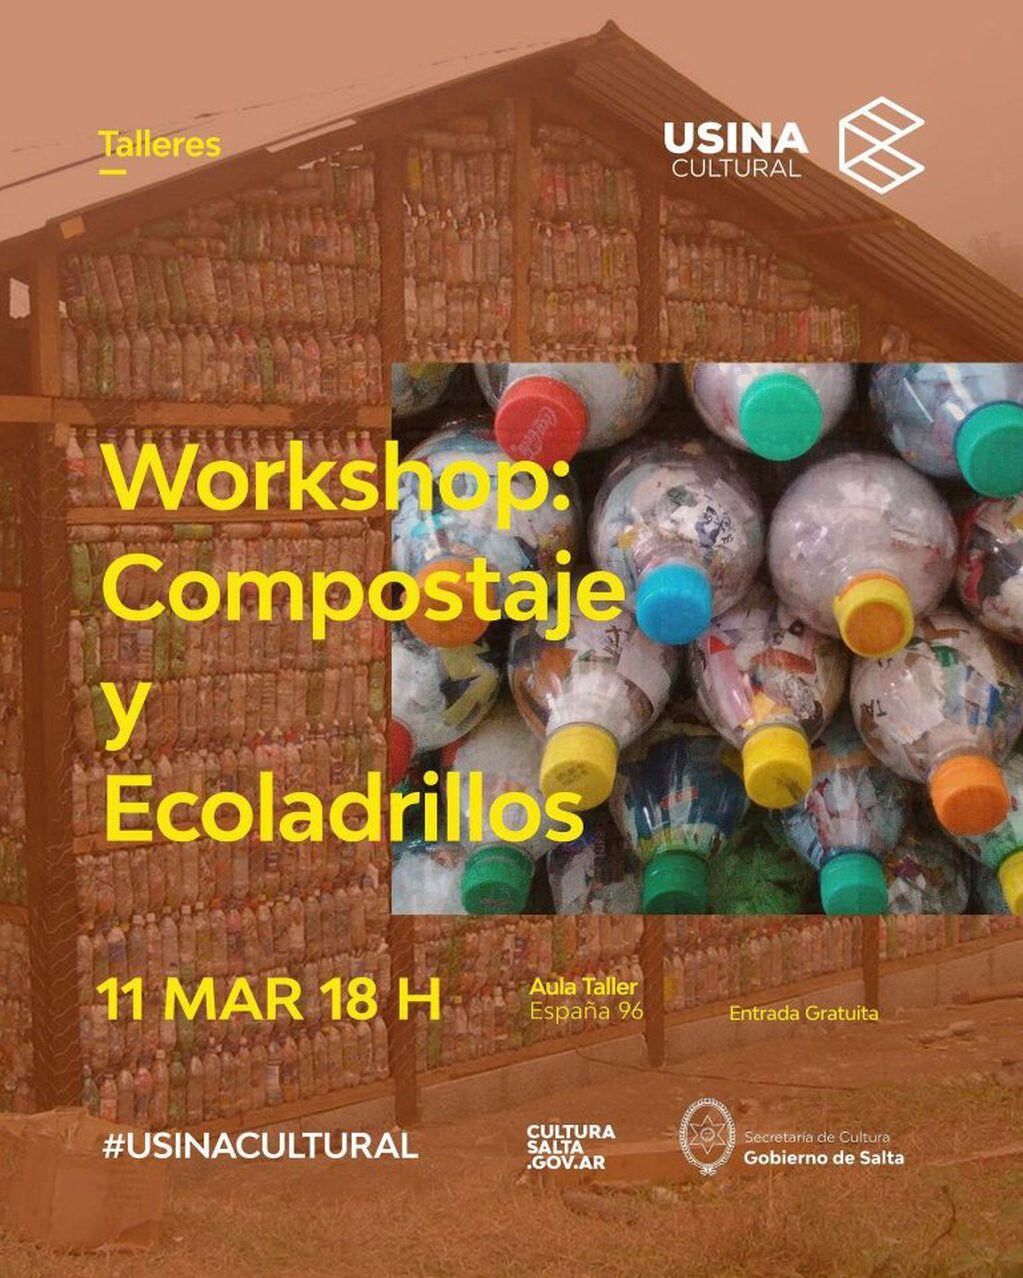 Workshop de compostaje y ecoladrillos (Facebook Usina Cultural)